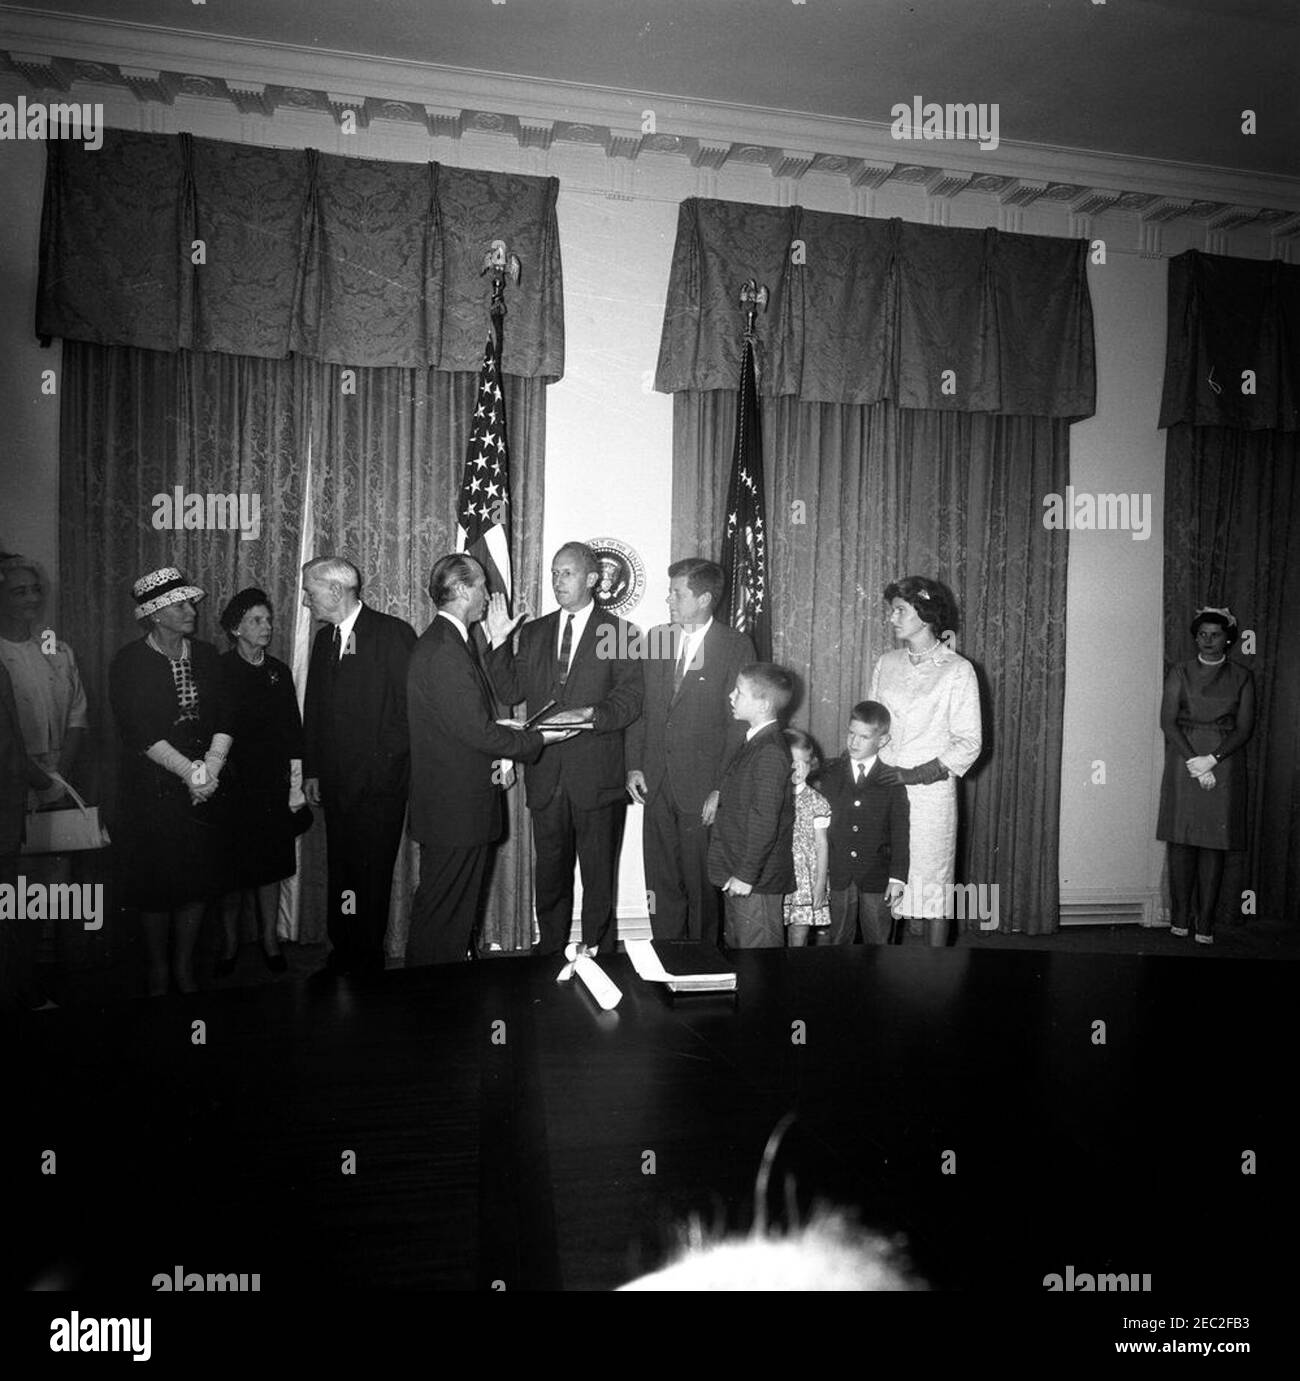 Assermentation en cérémonie, William Battle, ambassadeur des États-Unis en Australie, 5 h 14. Cérémonie d'assermentation de l'ambassadeur des États-Unis en Australie, William C. Battle. Le Président John F. Kennedy est le chef du Protocole, Angier Biddle Duke (au centre à gauche), qui administre le serment à M. Battle (au centre); l'ancien Gouverneur de Virginie, John S. Battle, est à gauche de M. Duke. Également en photo (debout à droite du président Kennedy): W. Cullen Battle, Jr.; Janie Battle; Robert W. Battle; Barry Webb Battle. Cabinet, Maison Blanche, Washington, D.C. [Photographie par Harold Sellers] Banque D'Images